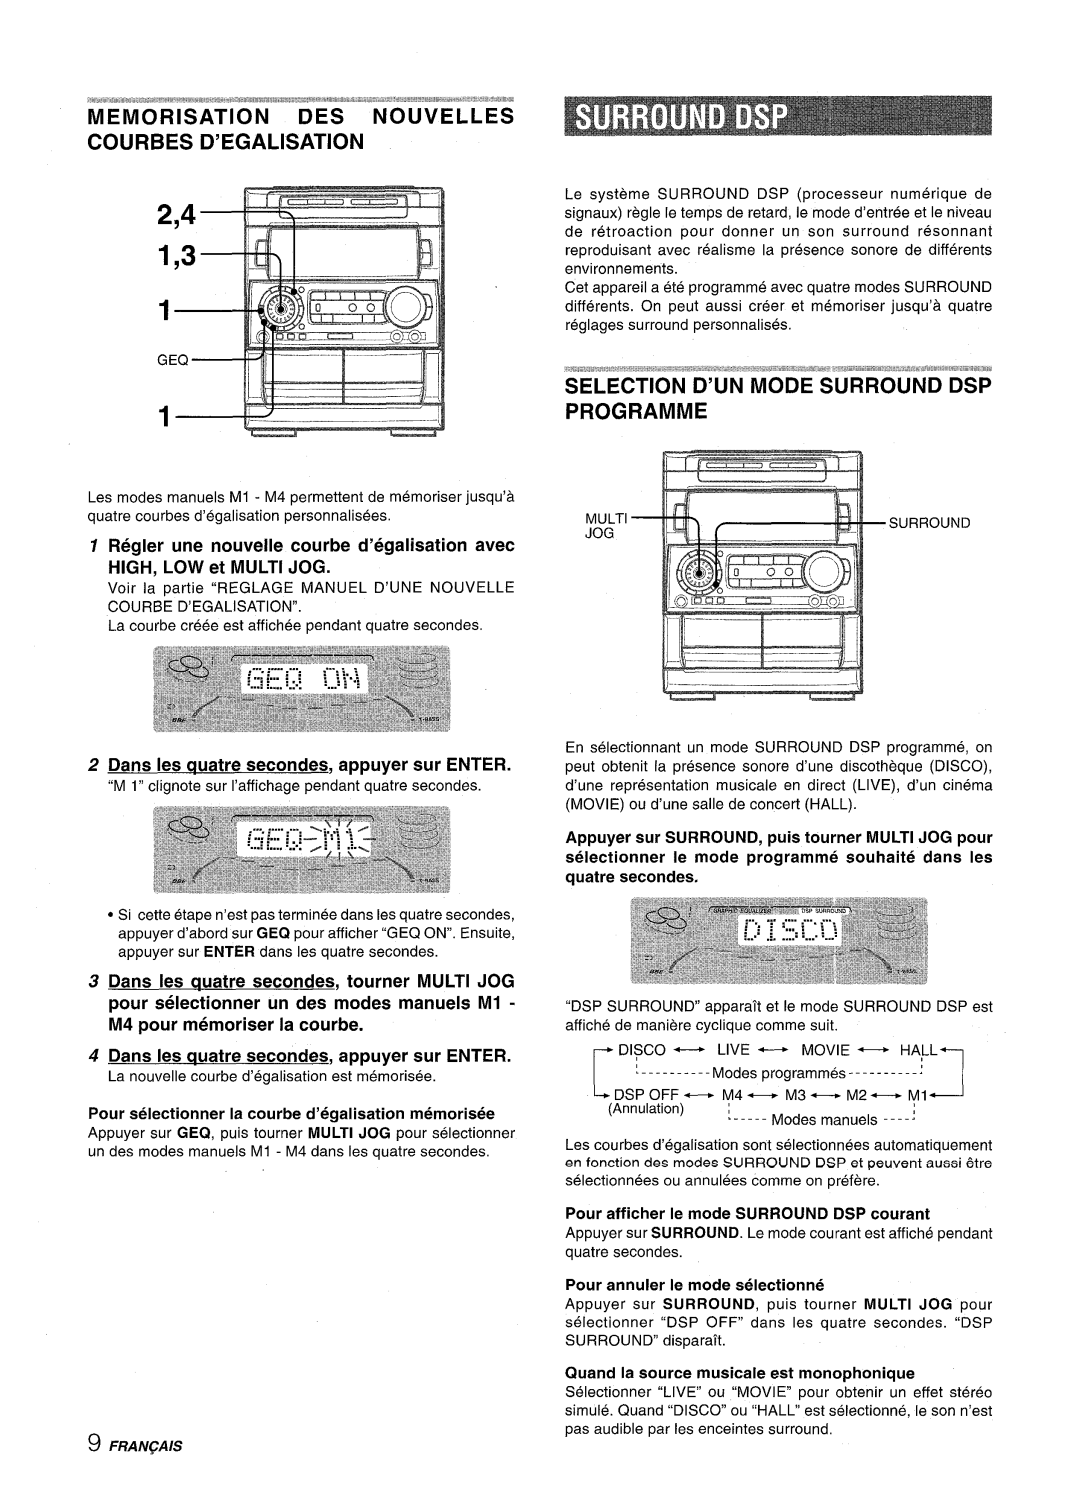 Aiwa NSX-A909 manual Regler une nouvelle courbe d’egalisation avec, Dans Ies auatre secondes, appuyer sur ENTER, Fran~Ais 